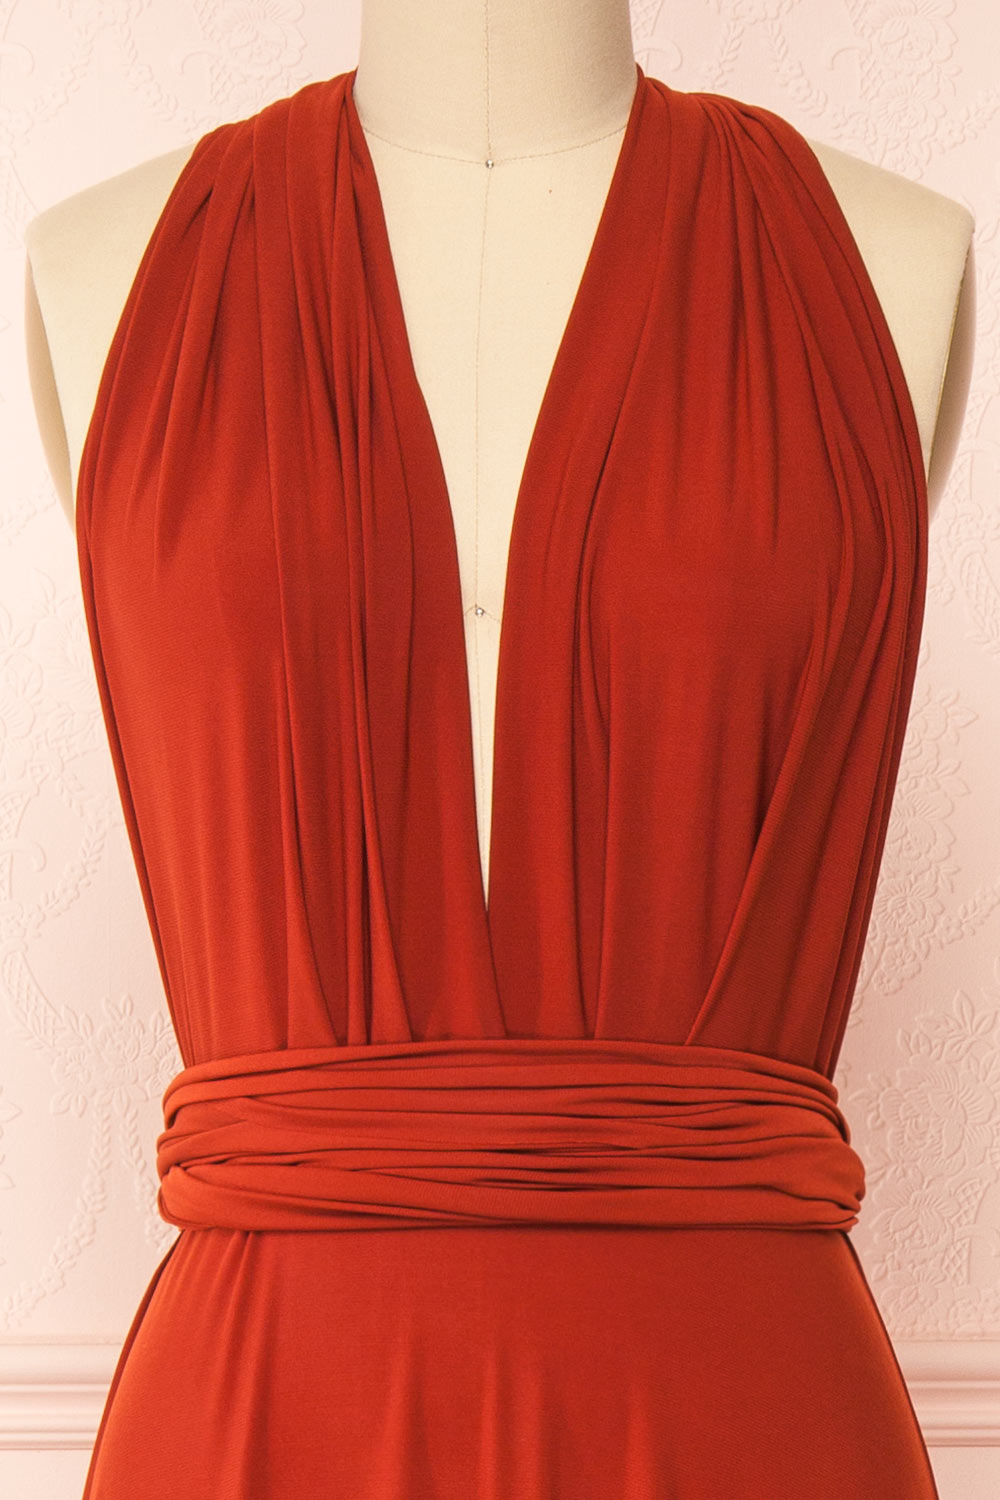 Violaine Rust Convertible Maxi Dress | Boutique 1861 front second close-up